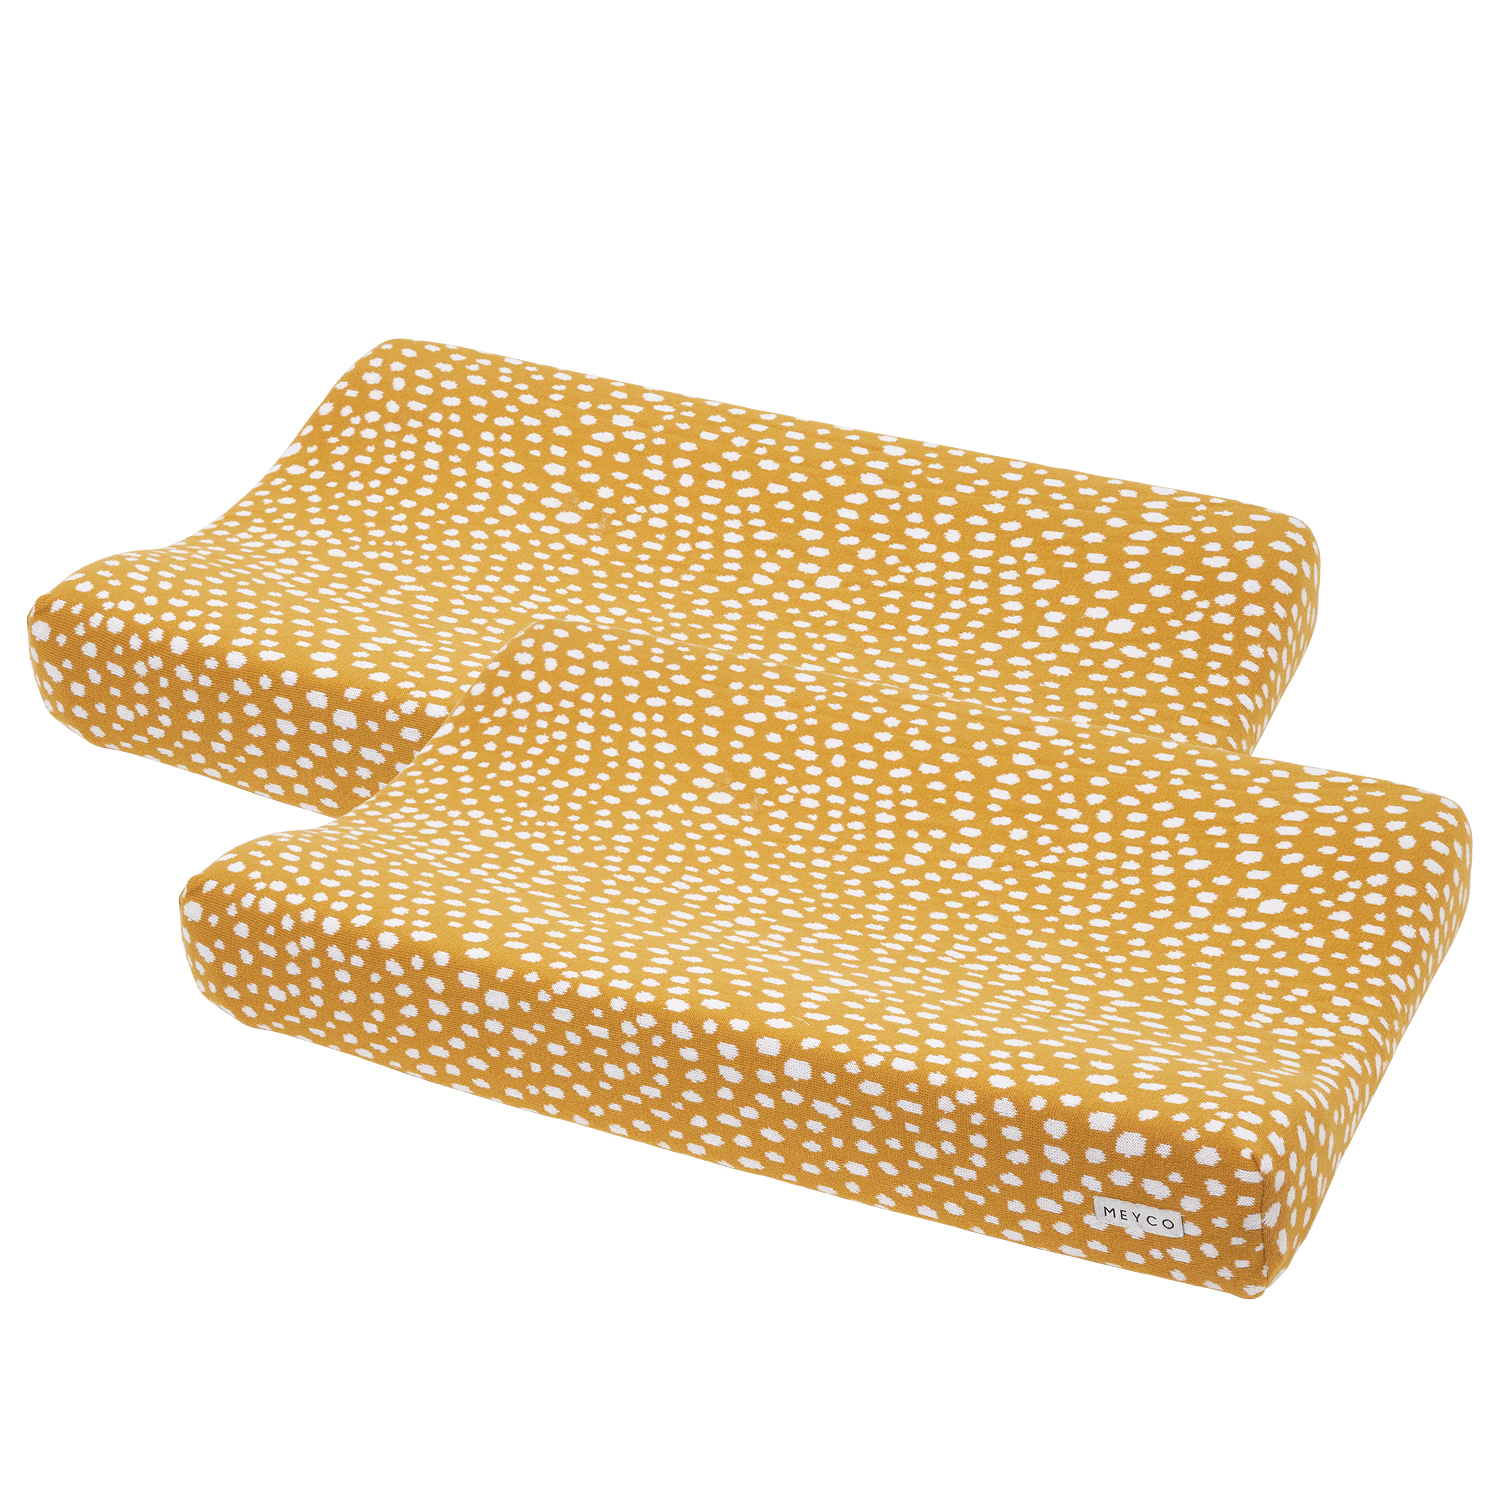 Wickelauflagenbezug 2er pack Cheetah - honey gold - 50x70cm